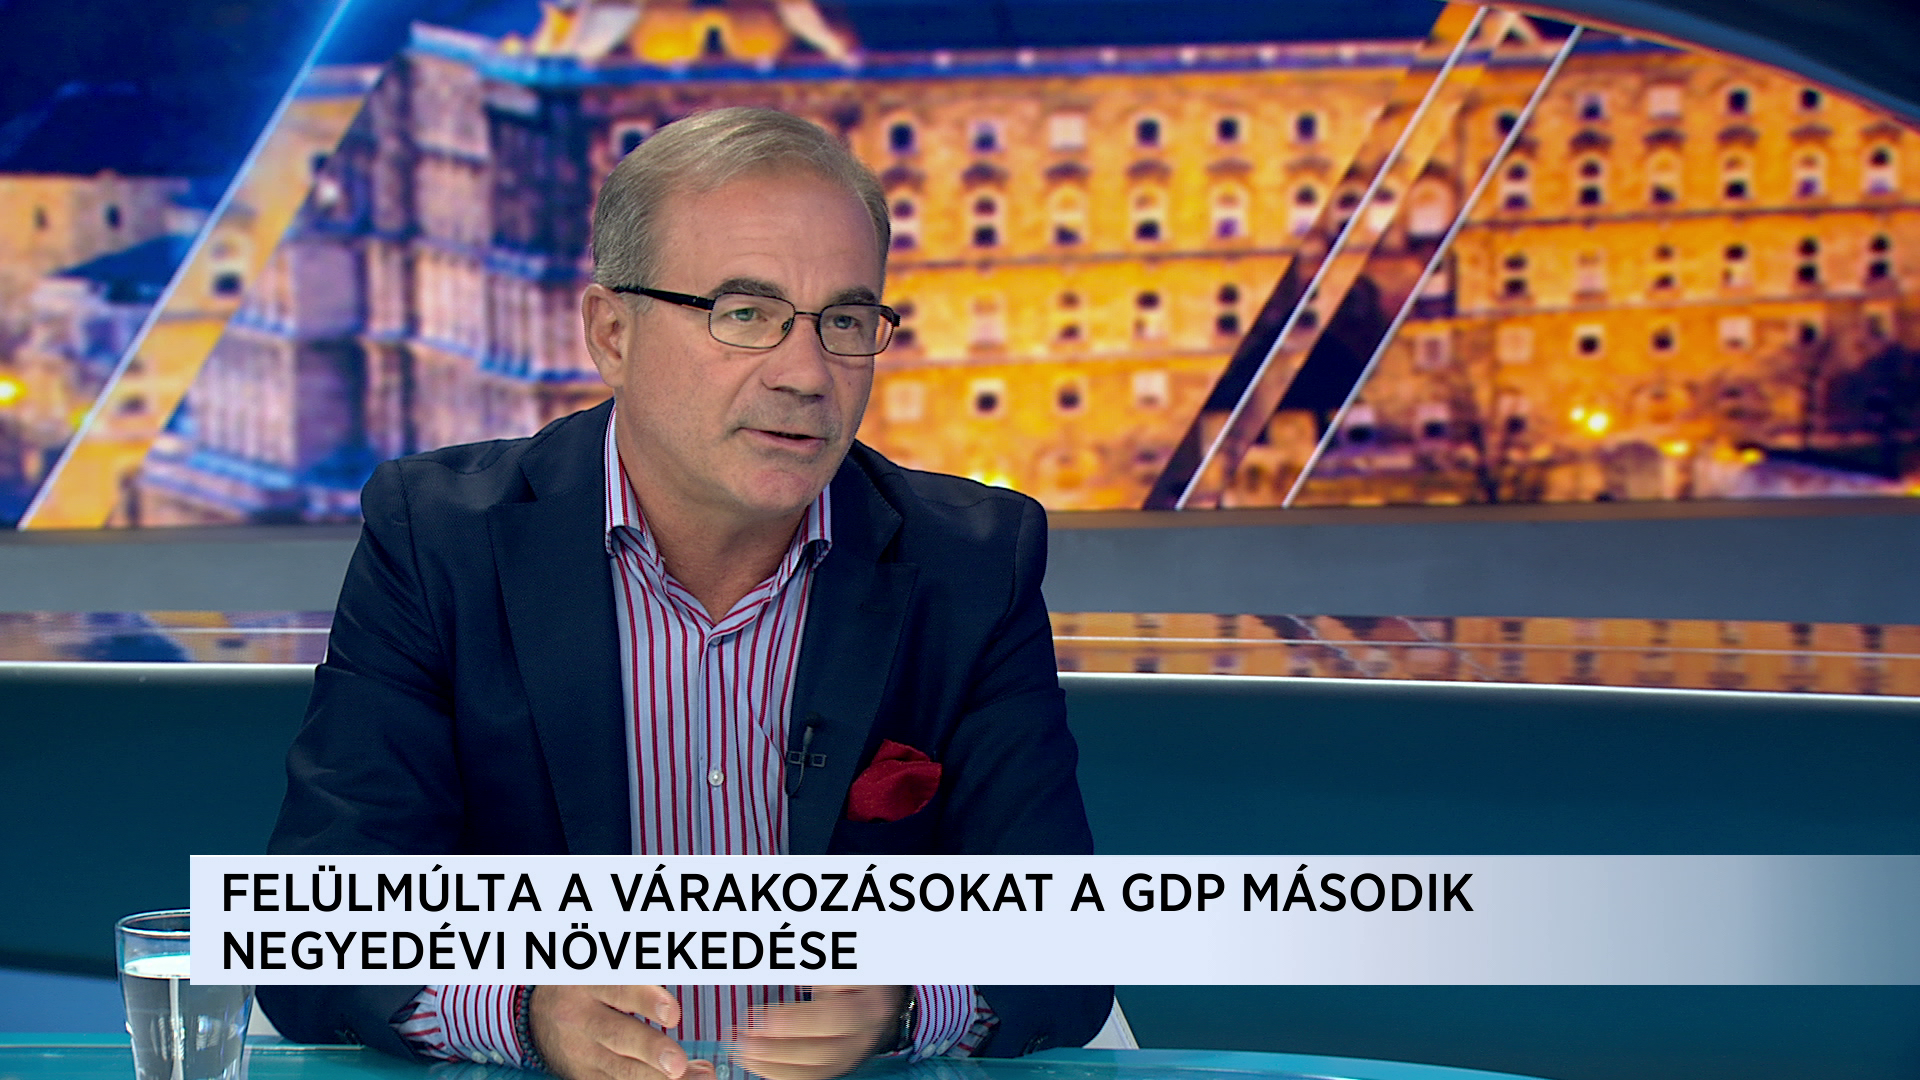 Szajlai Csaba: Gazdasági növekedésben elsők vagyunk, ráadásul a költségvetésünk többletes